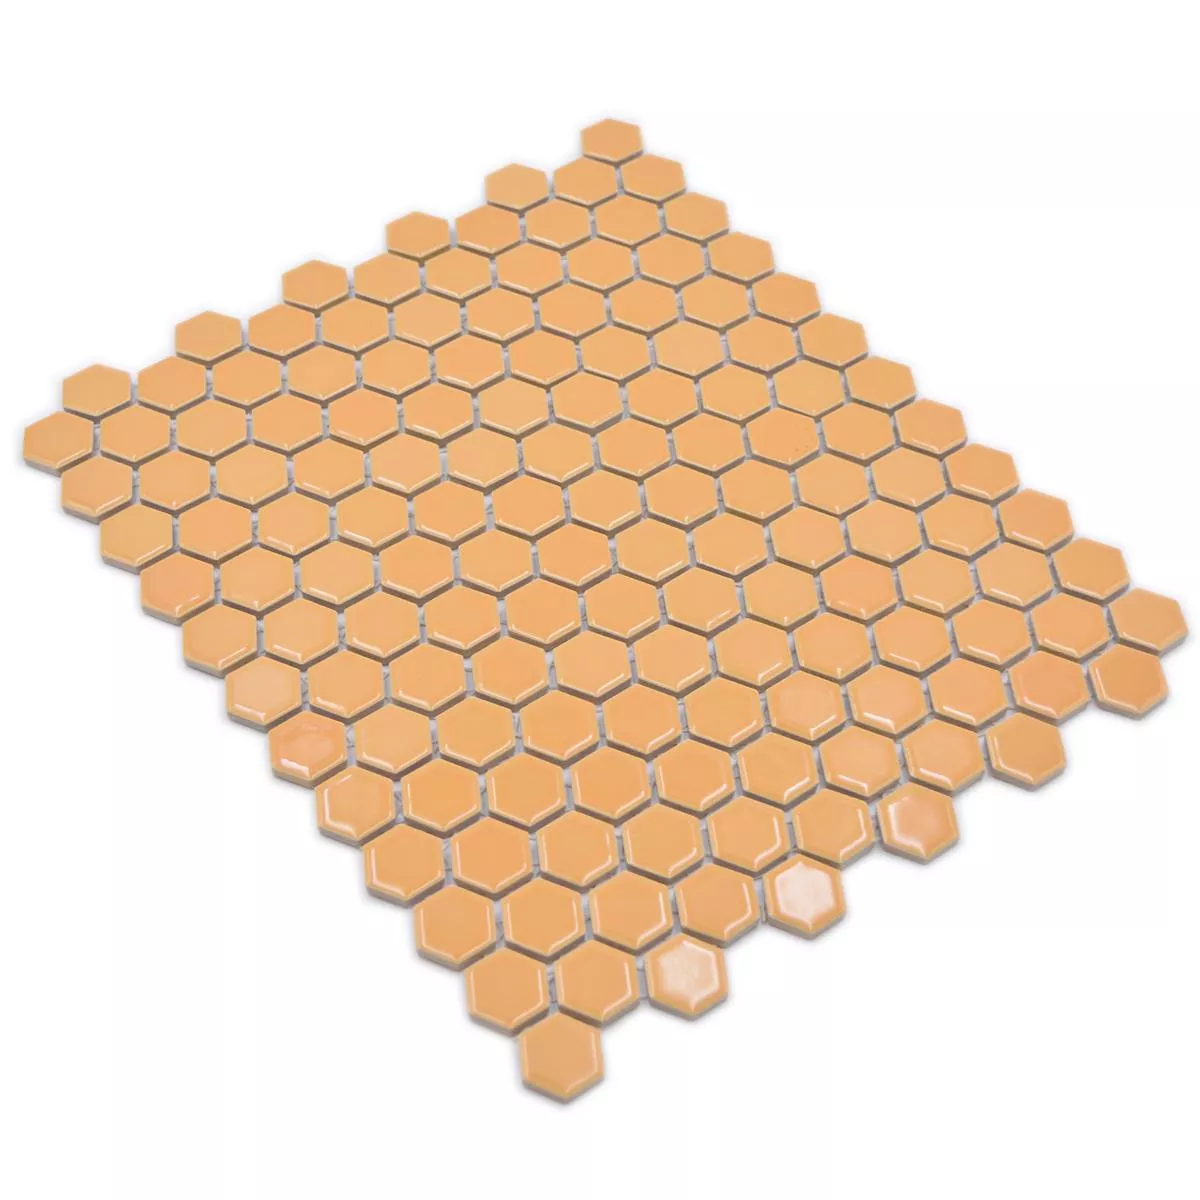 Mosaico Cerámico Salomon Hexagonales Ocre Naranja H23